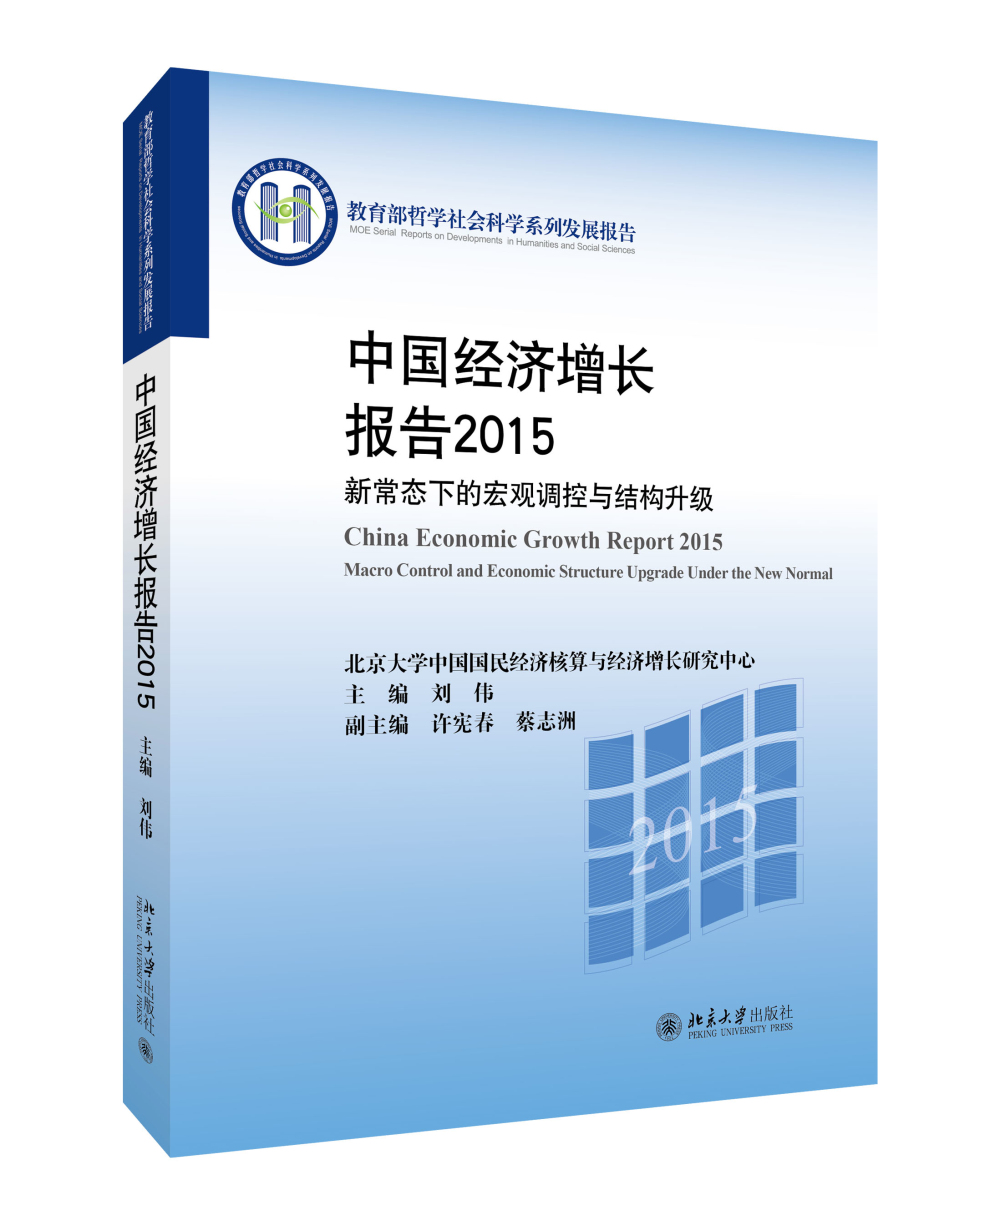 中国经济增长报告2015：新常态下的宏观调控与结构升级